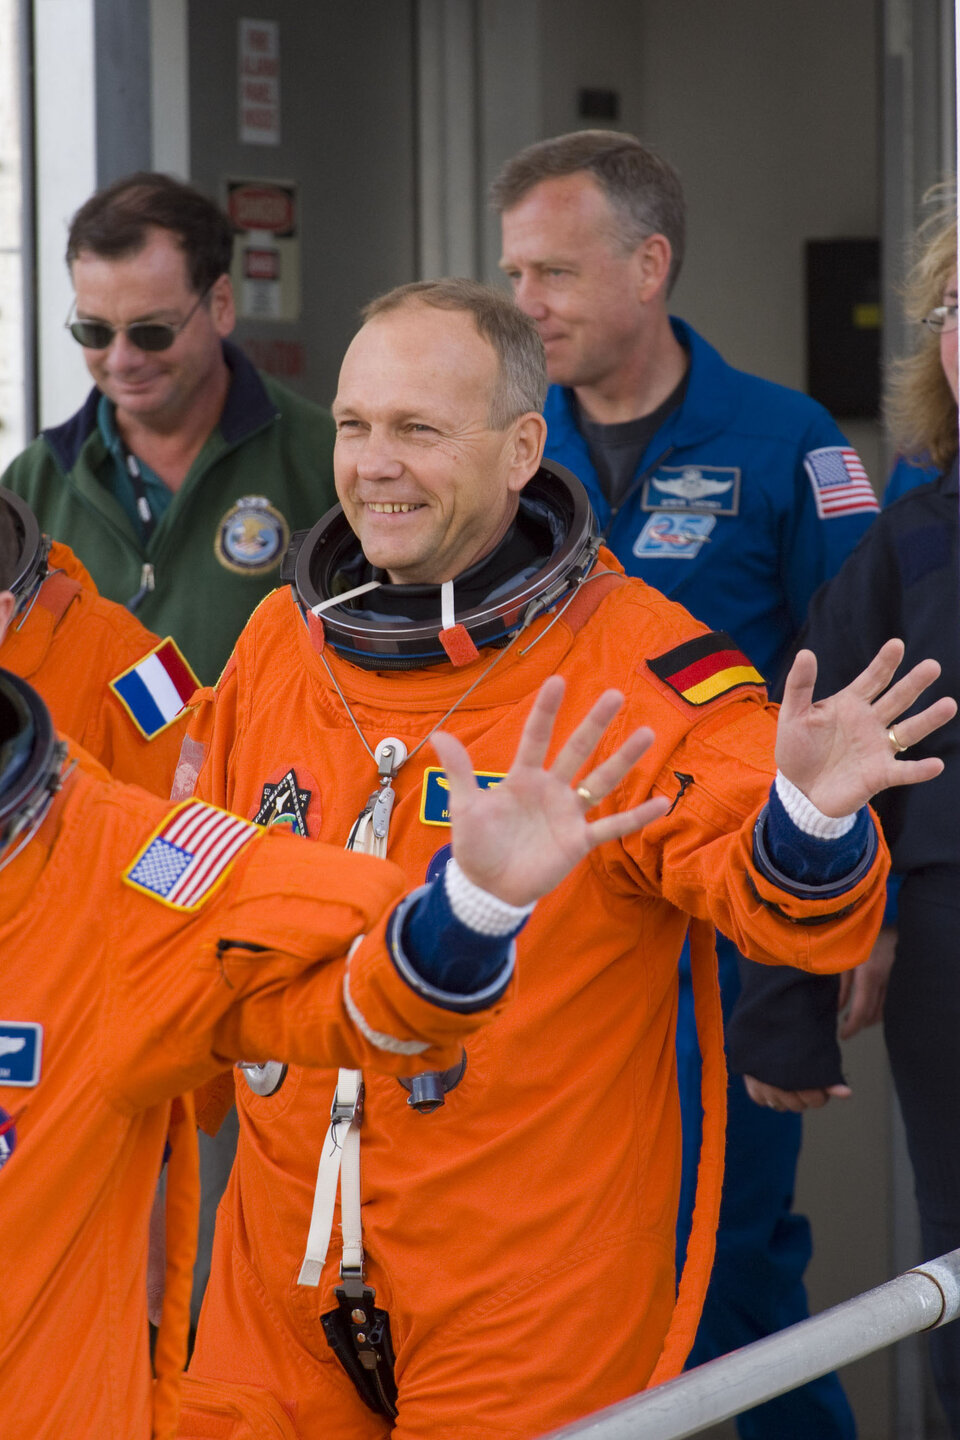 Hans Schlegel will take part in the mission's first spacewalk